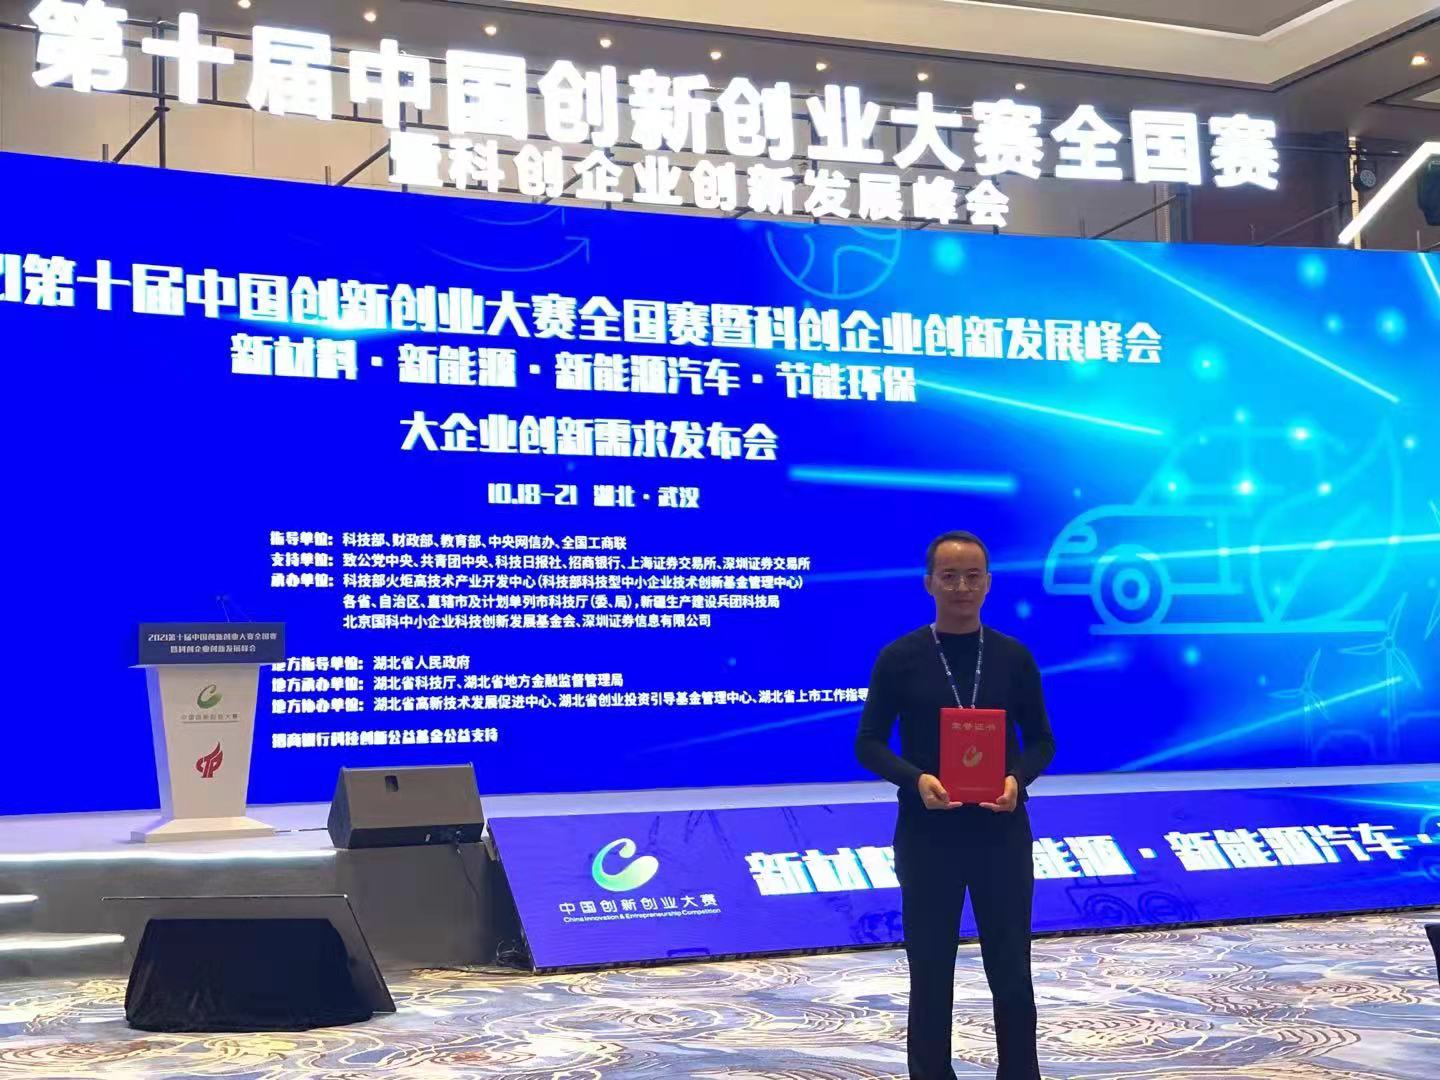 皮革化工业唯一代表——麦吉高分子   登顶“第十届中国创新创业大赛全国赛”迎来巅峰对决